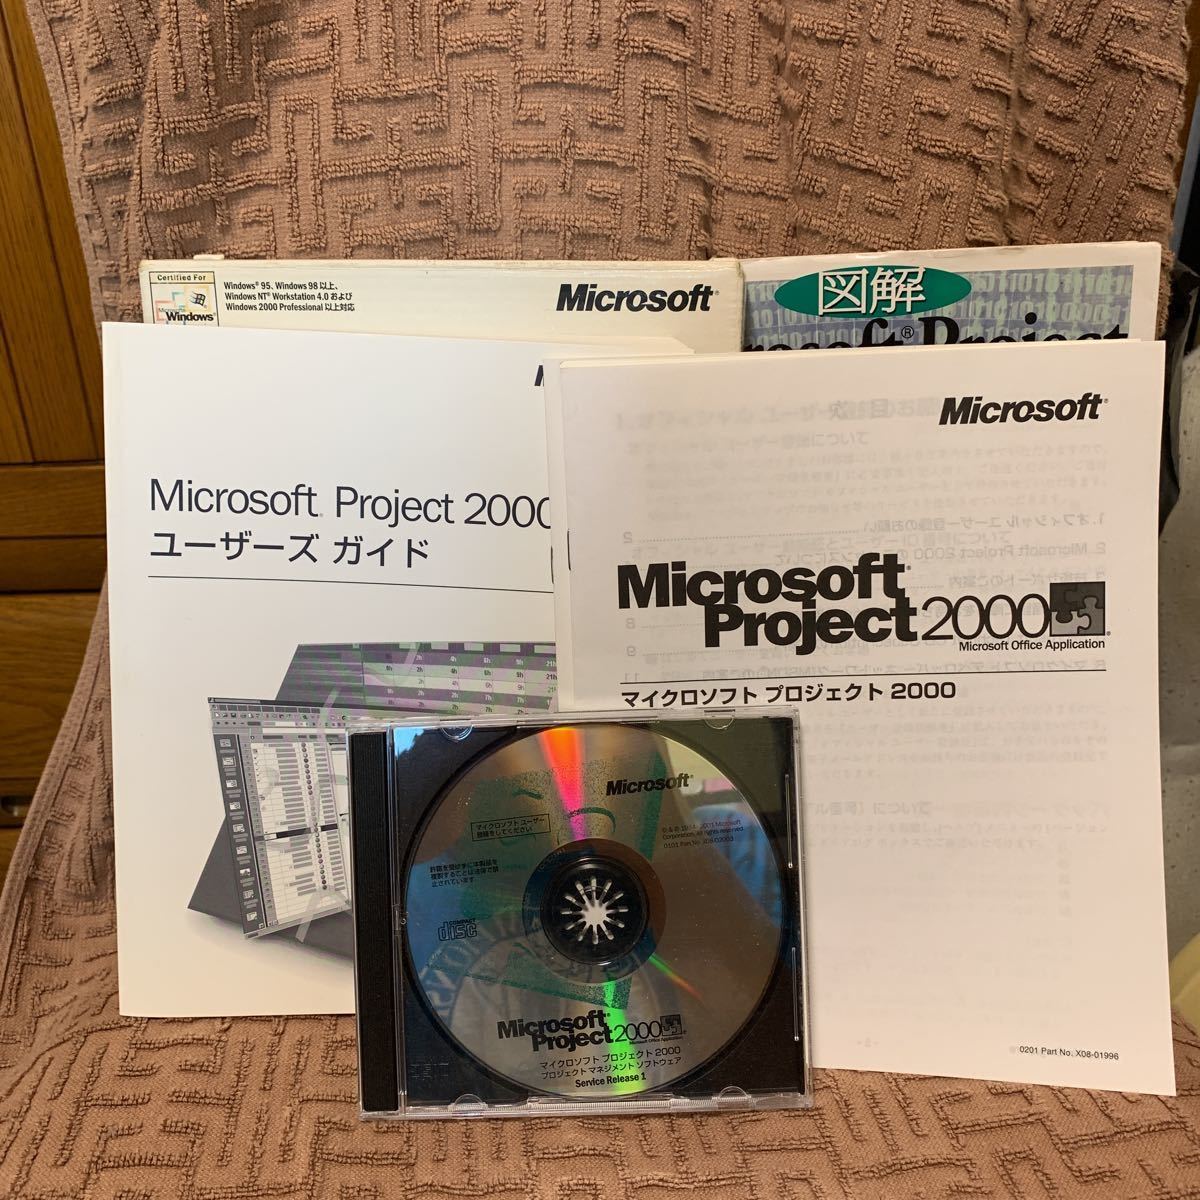  Microsoft MS-Project 2000. справочник [ иллюстрация Microsoft Project недостаточность не делать поэтому. Project management ]